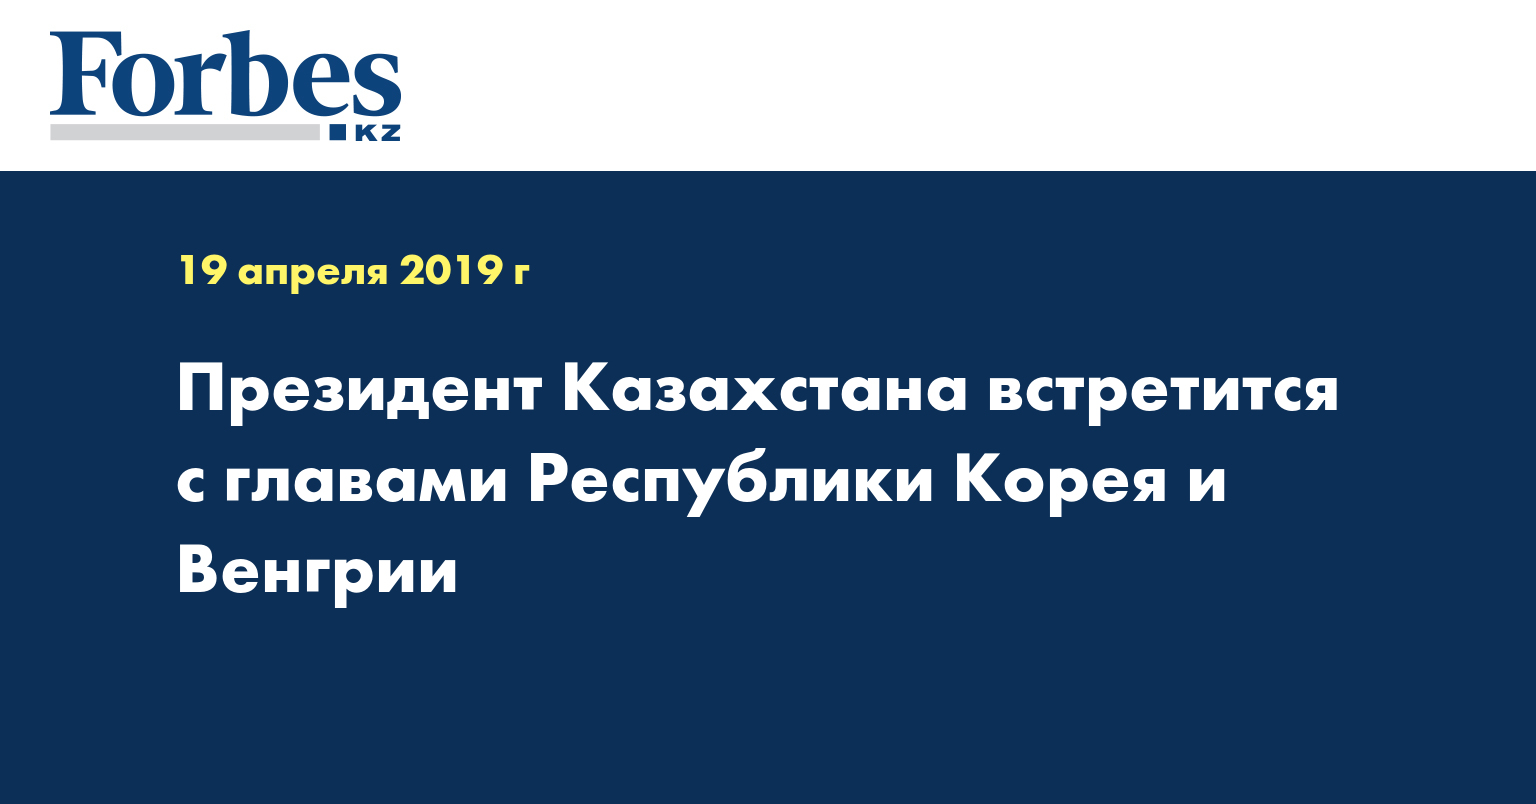 Президент Казахстана встретится с главами Республики Корея и Венгрии